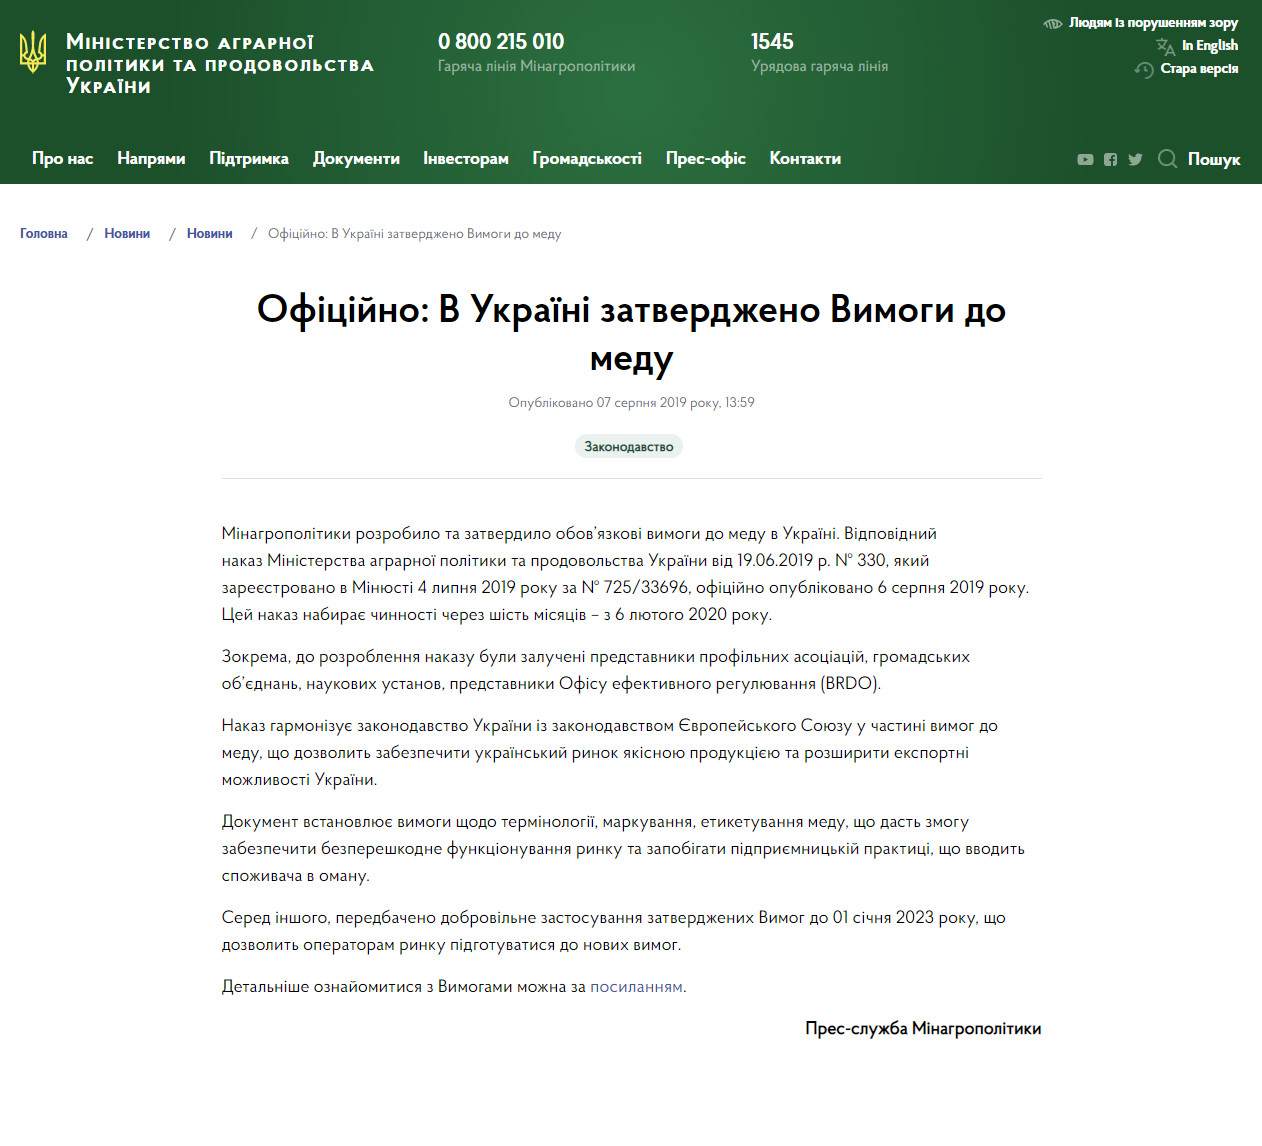 https://minagro.gov.ua/ua/news/oficijno-v-ukrayini-zatverdzheno-vimogi-do-medu